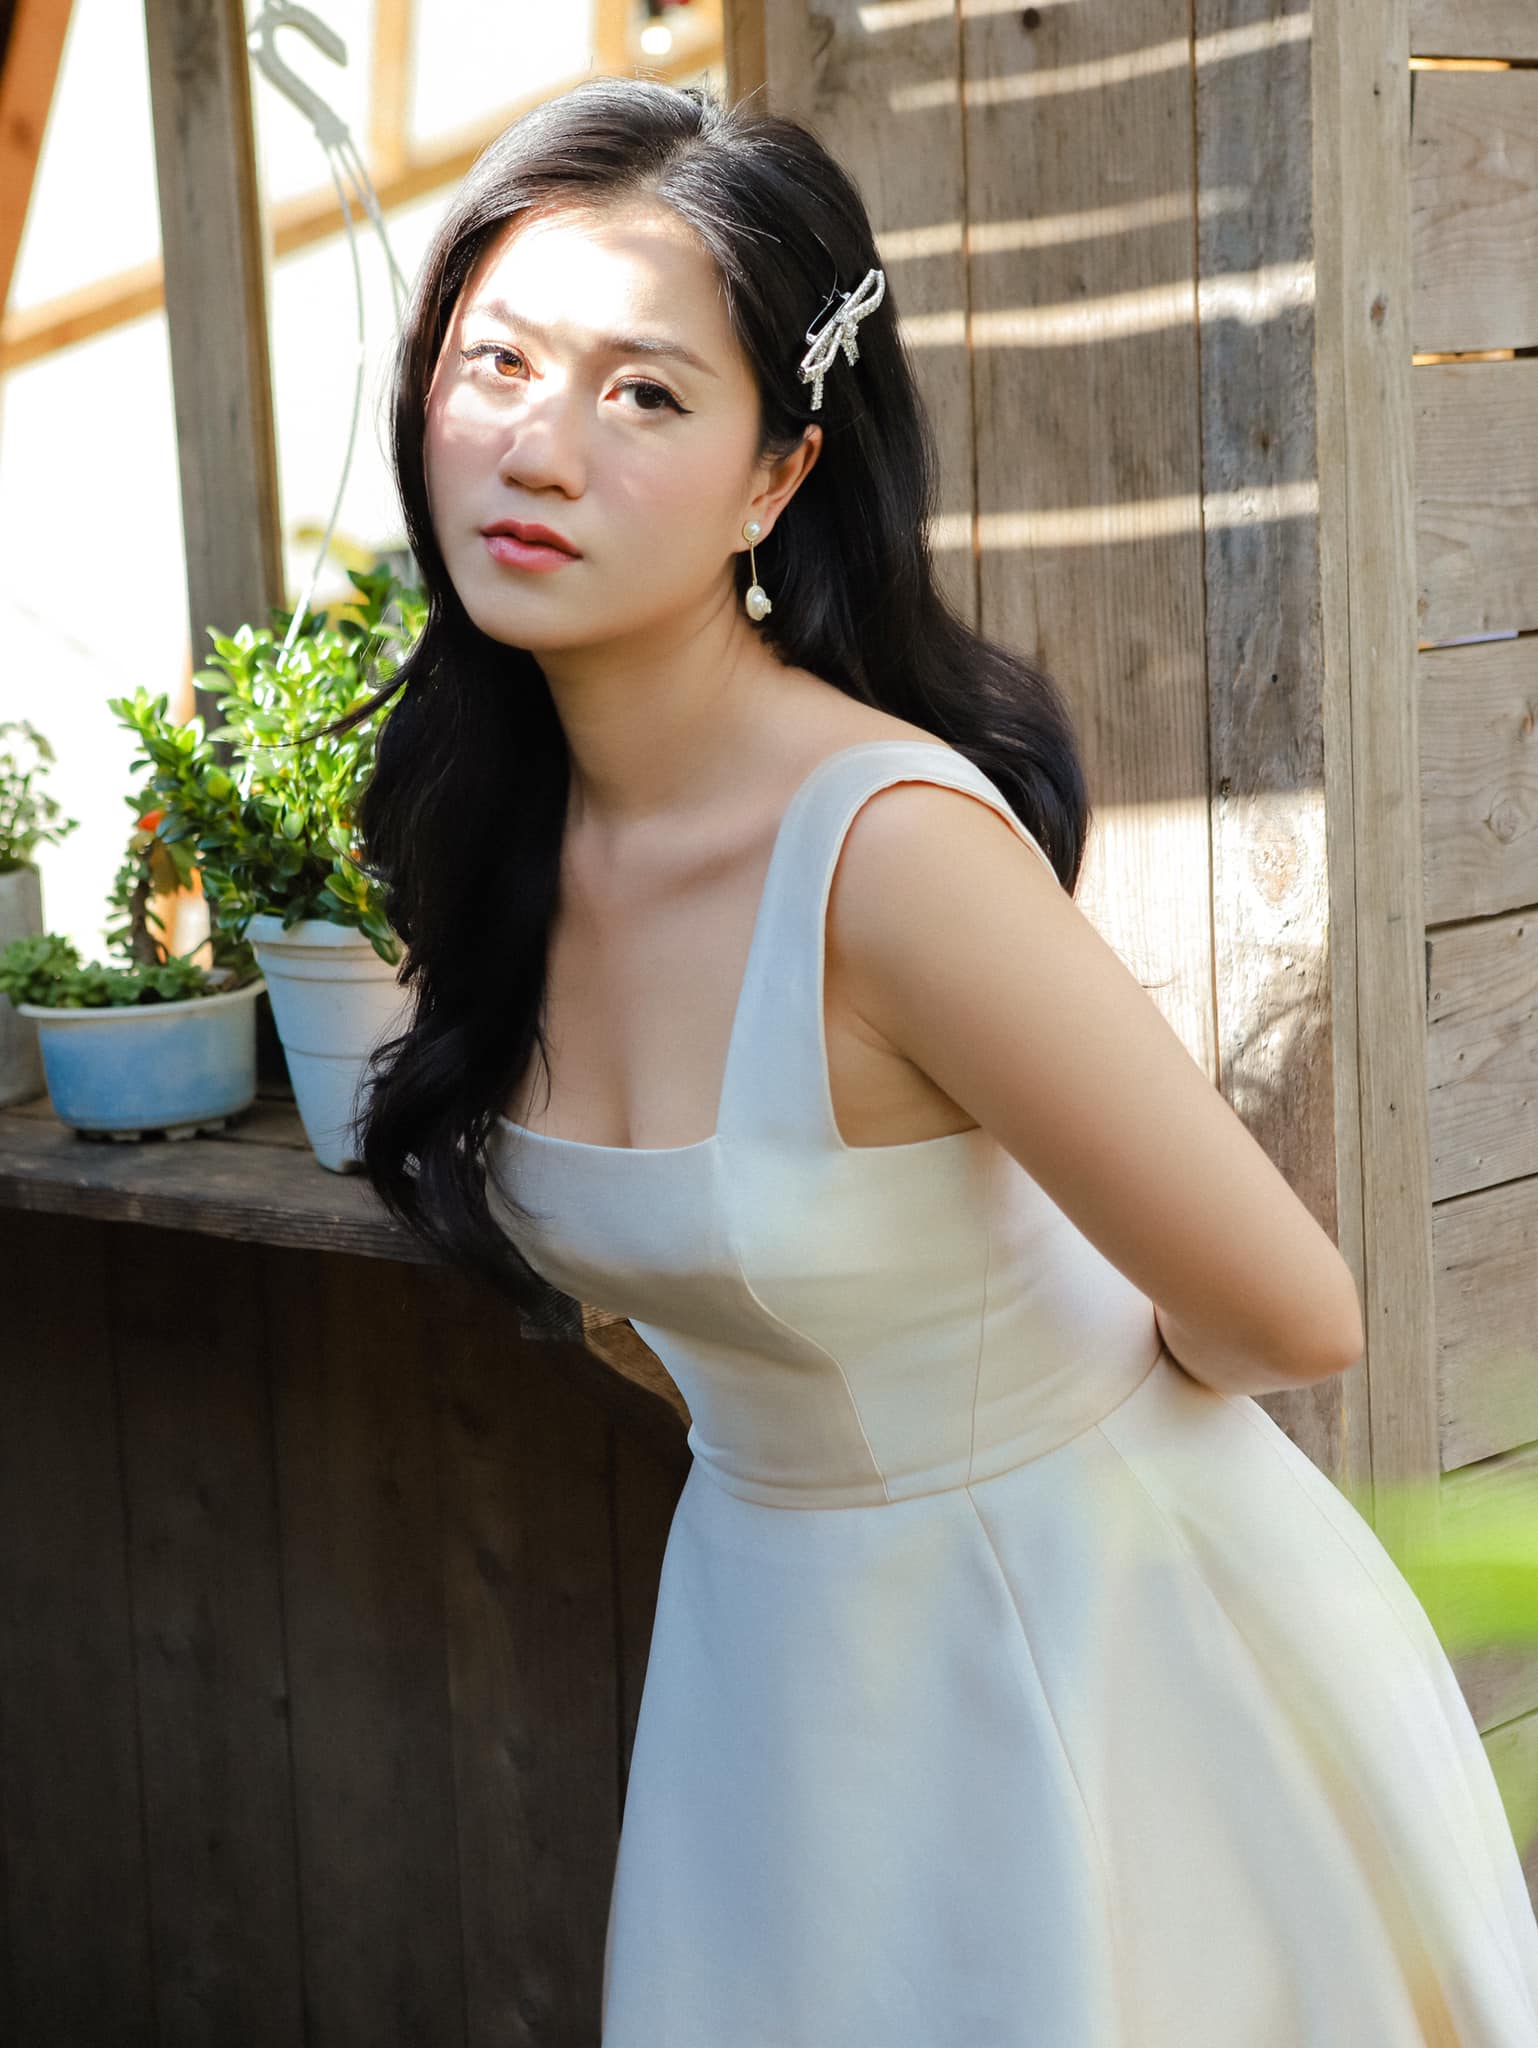 Nữ diễn viên Lâm Vỹ Dạ khiến fan nhận không ra khi tung hình ảnh thuần khiết như nàng thơ. Ở tuổi 32, Lâm Vỹ Dạ vẫn rất trẻ trung như thế này dù đã làm mẹ của 2 nhóc tì.